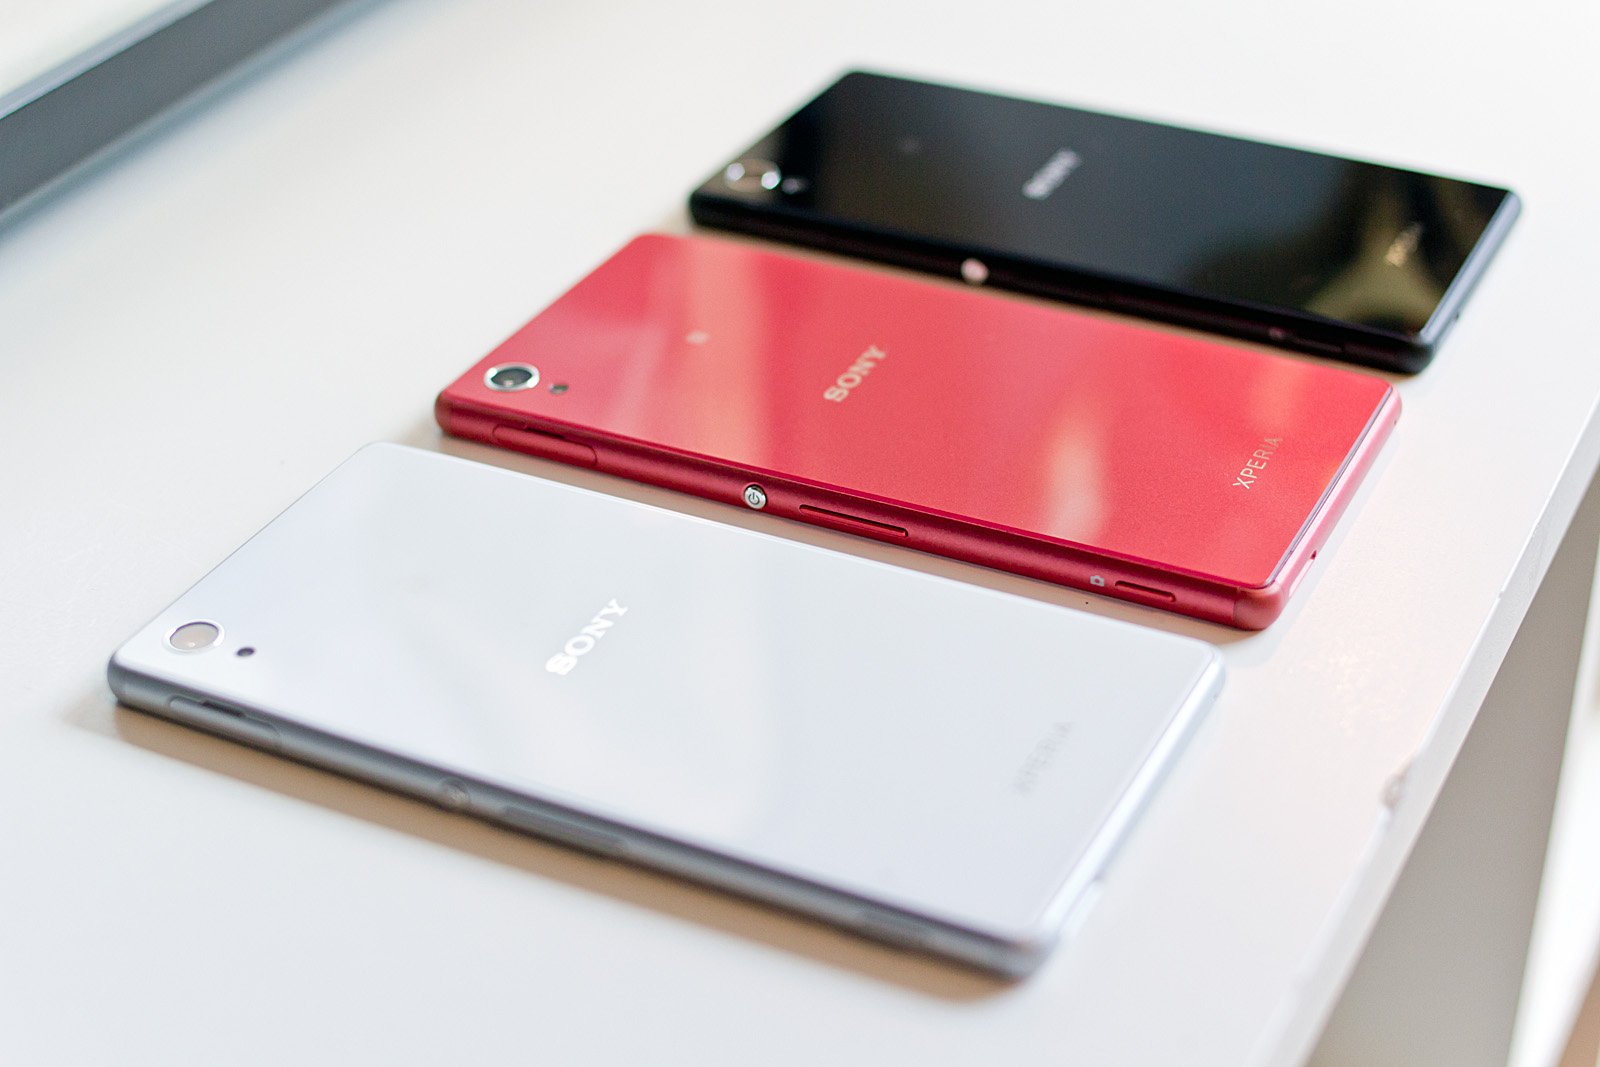 ASUS ZenFone 2 ön inceleme 4GB RAMli ilk telefon